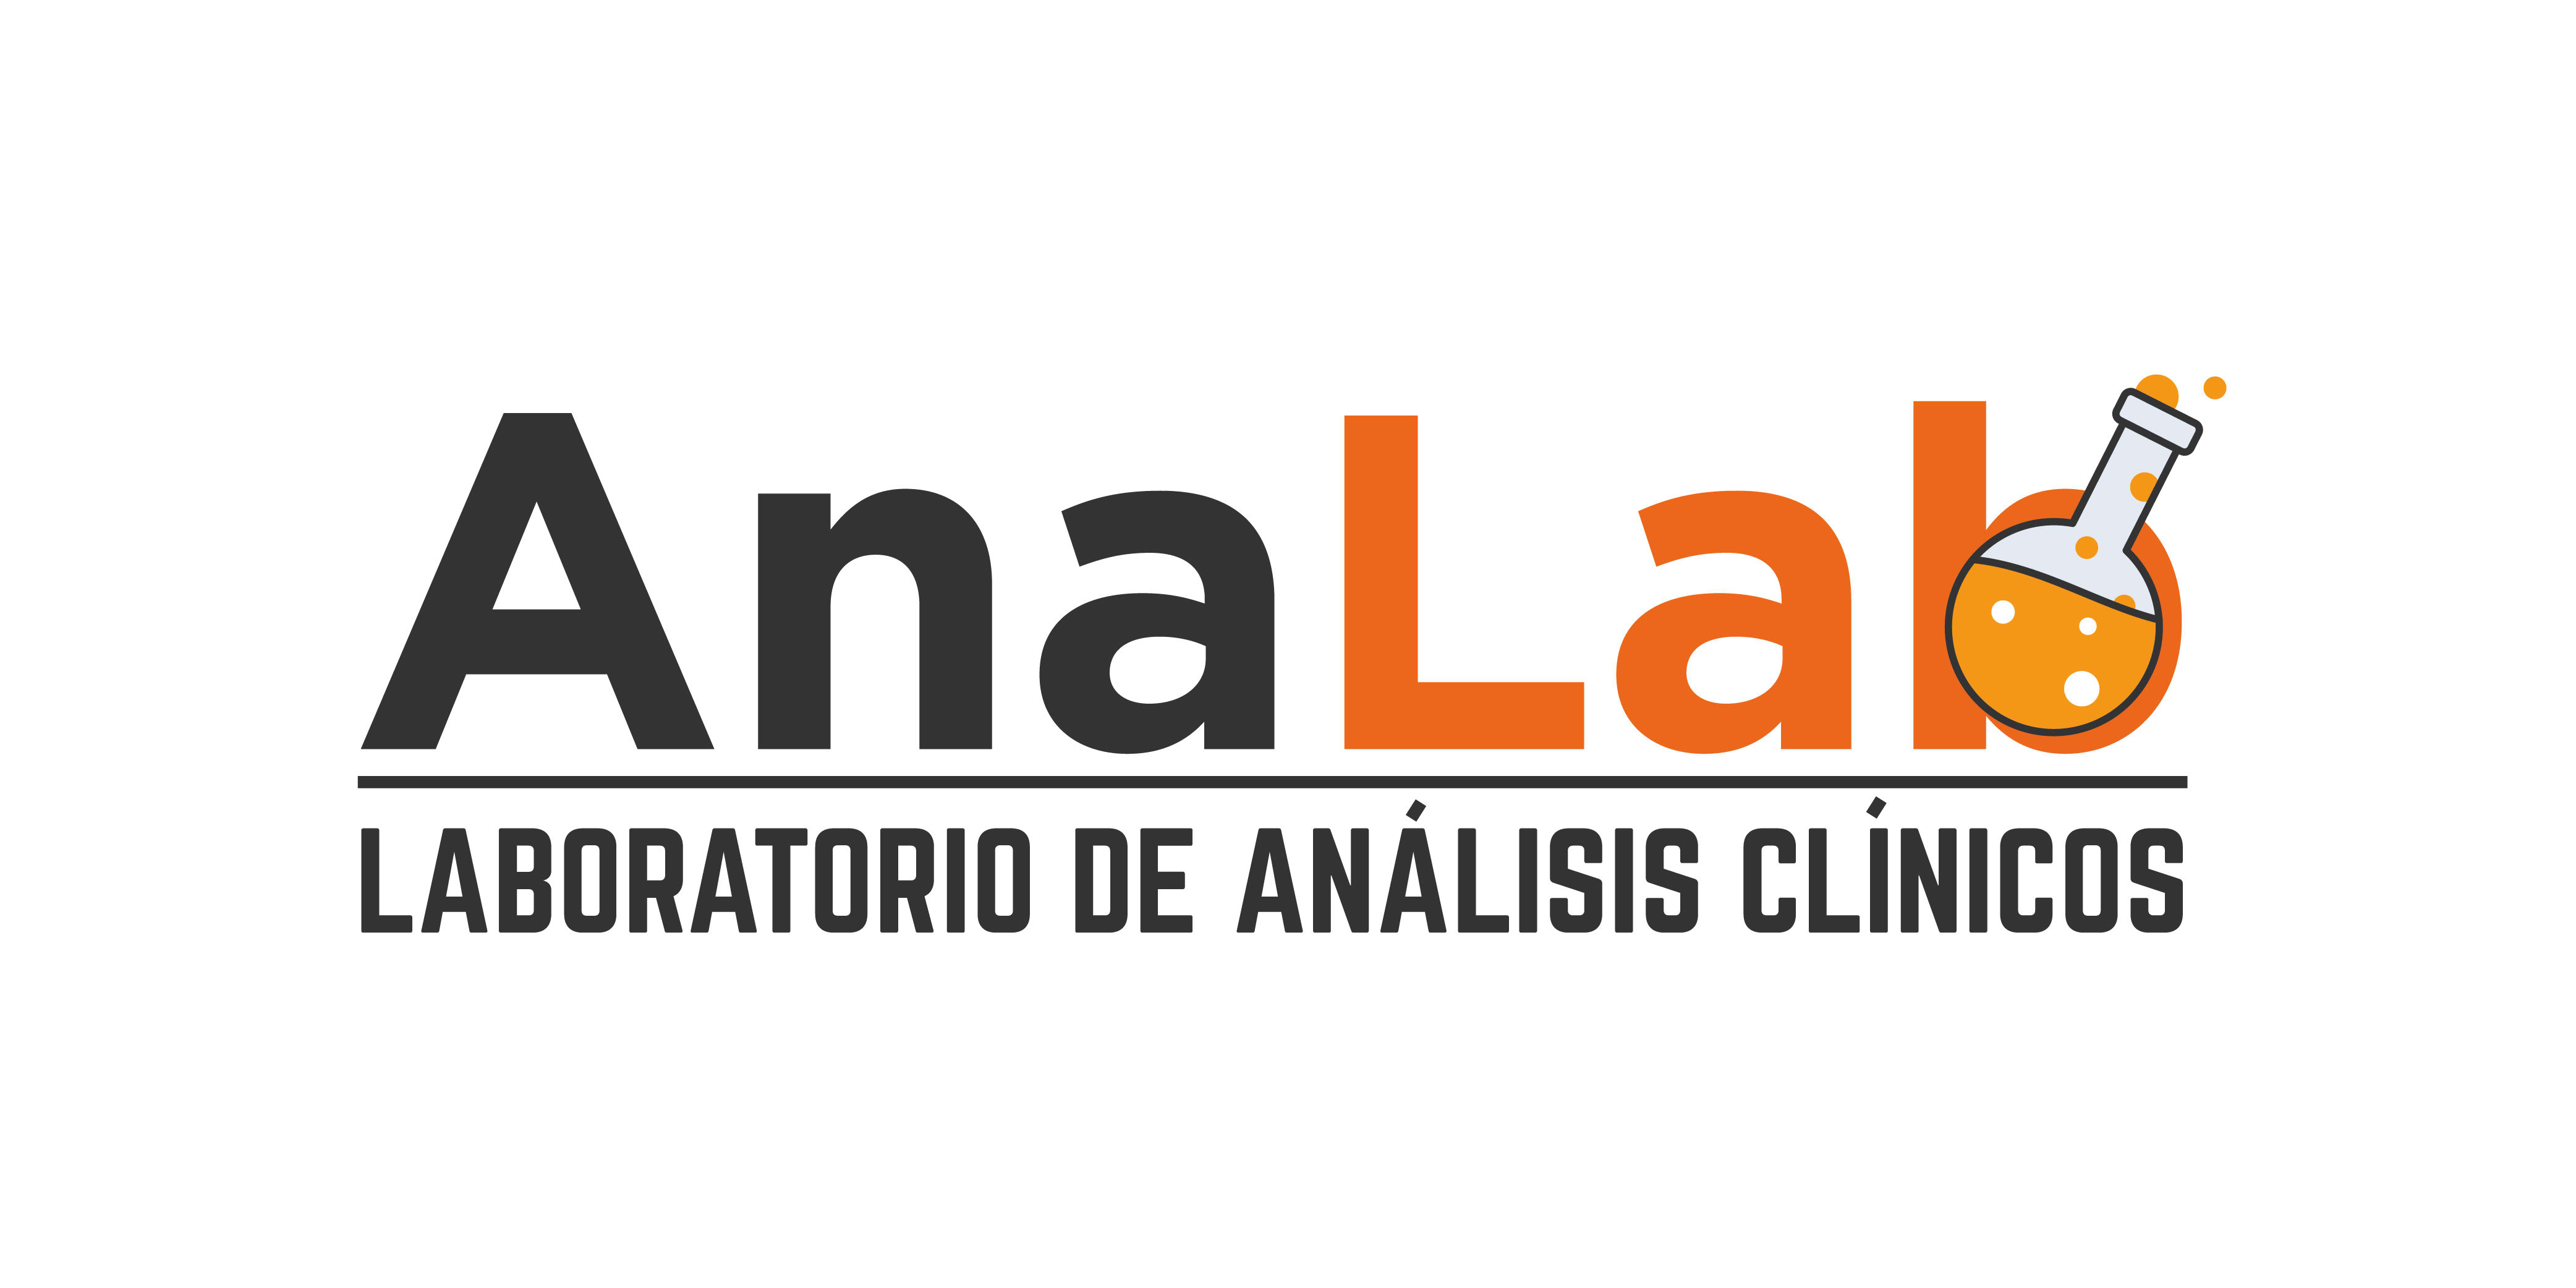 Analab Laboratorio de Análisis Clínicos